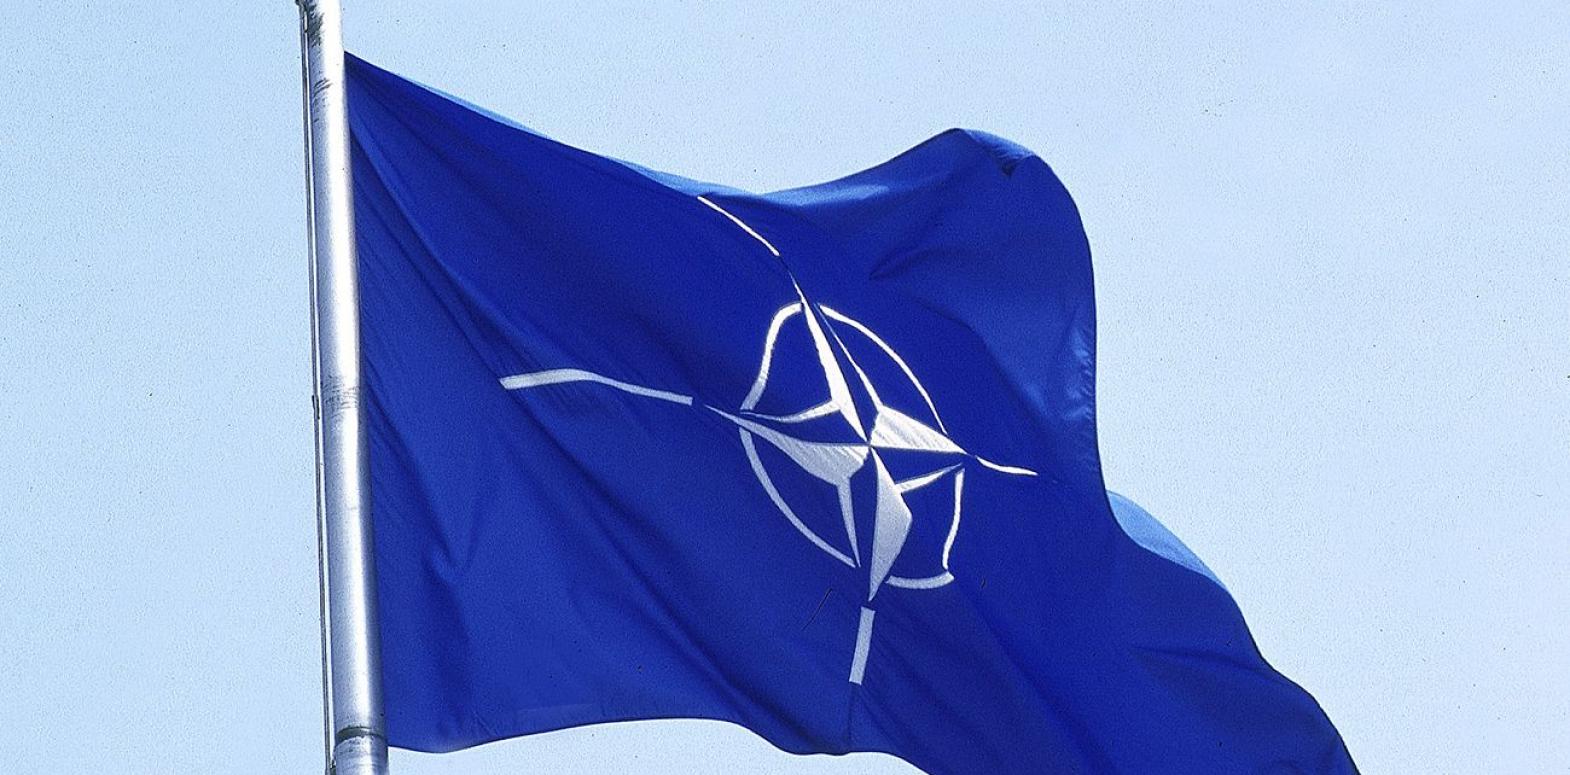 Стратегия НАТО впервые будет включать защиту союзников в качестве основной миссии альянса, - СМИ